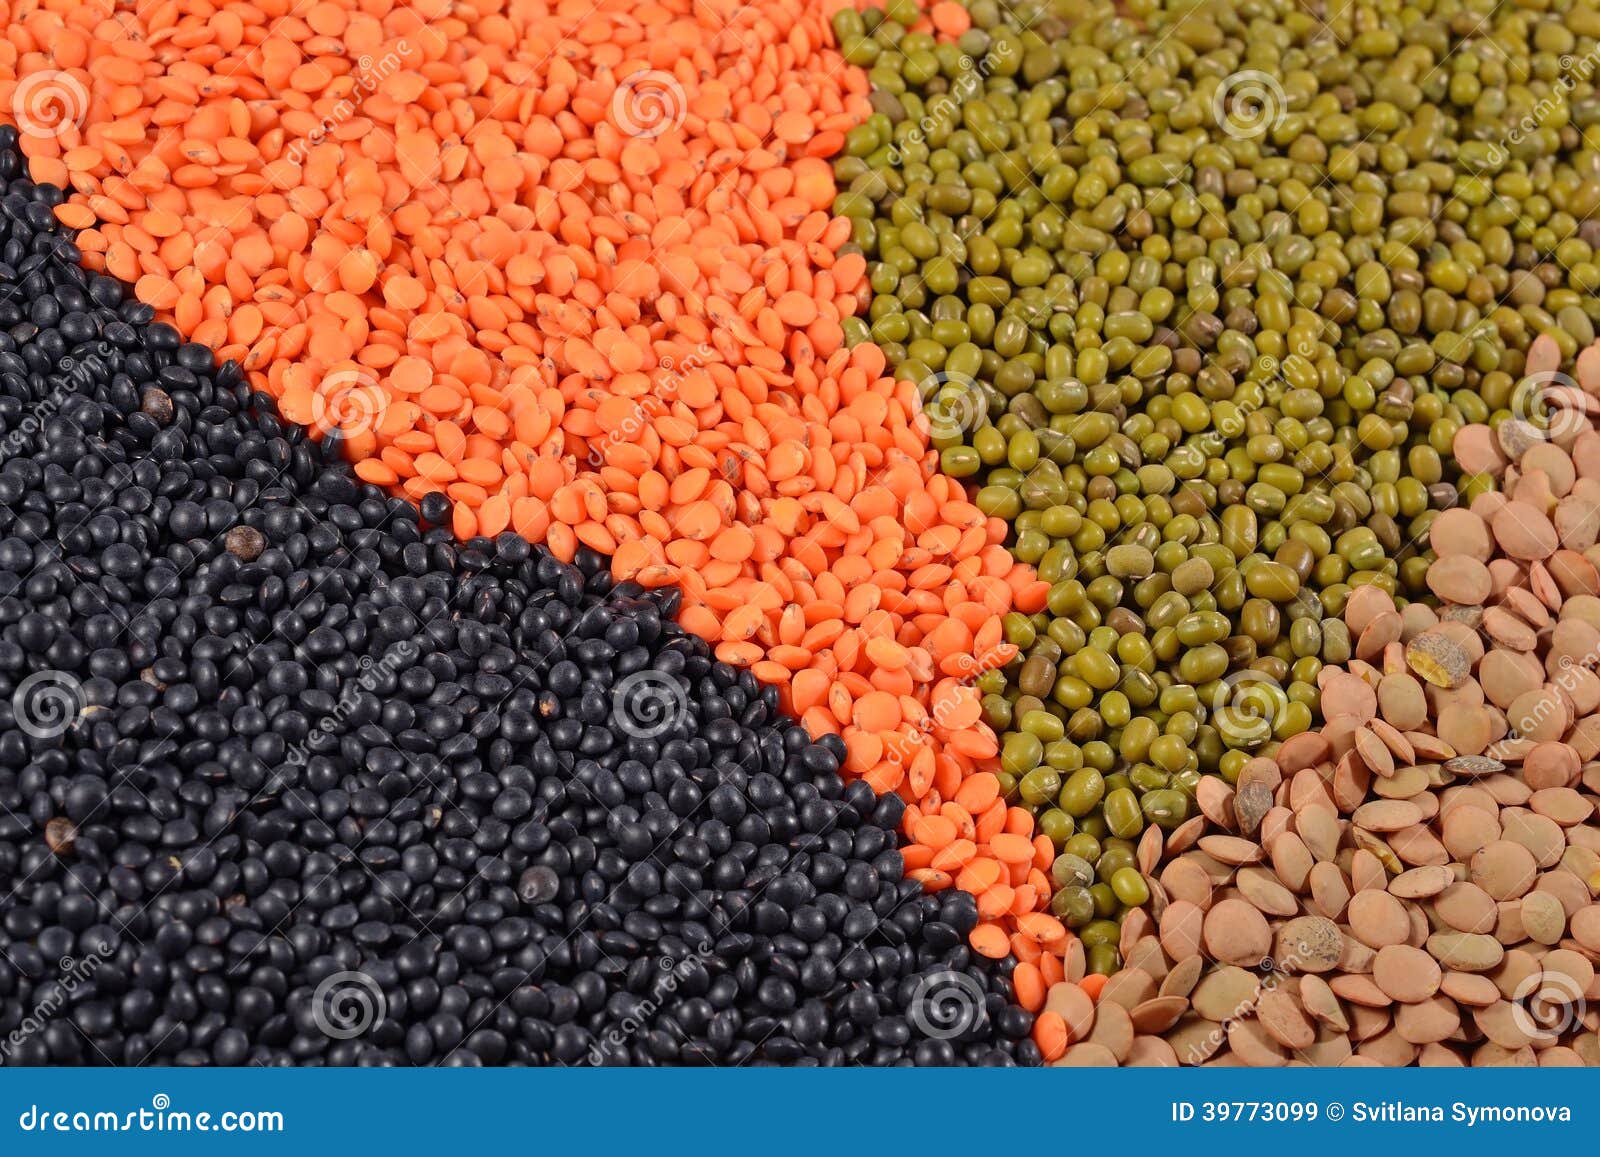 扁豆、扁豆、豌豆和鸡豆 库存图片. 图片 包括有 花马, 宏指令, 食物, 的协助, 绿色, 饮食, 豆类 - 28718399